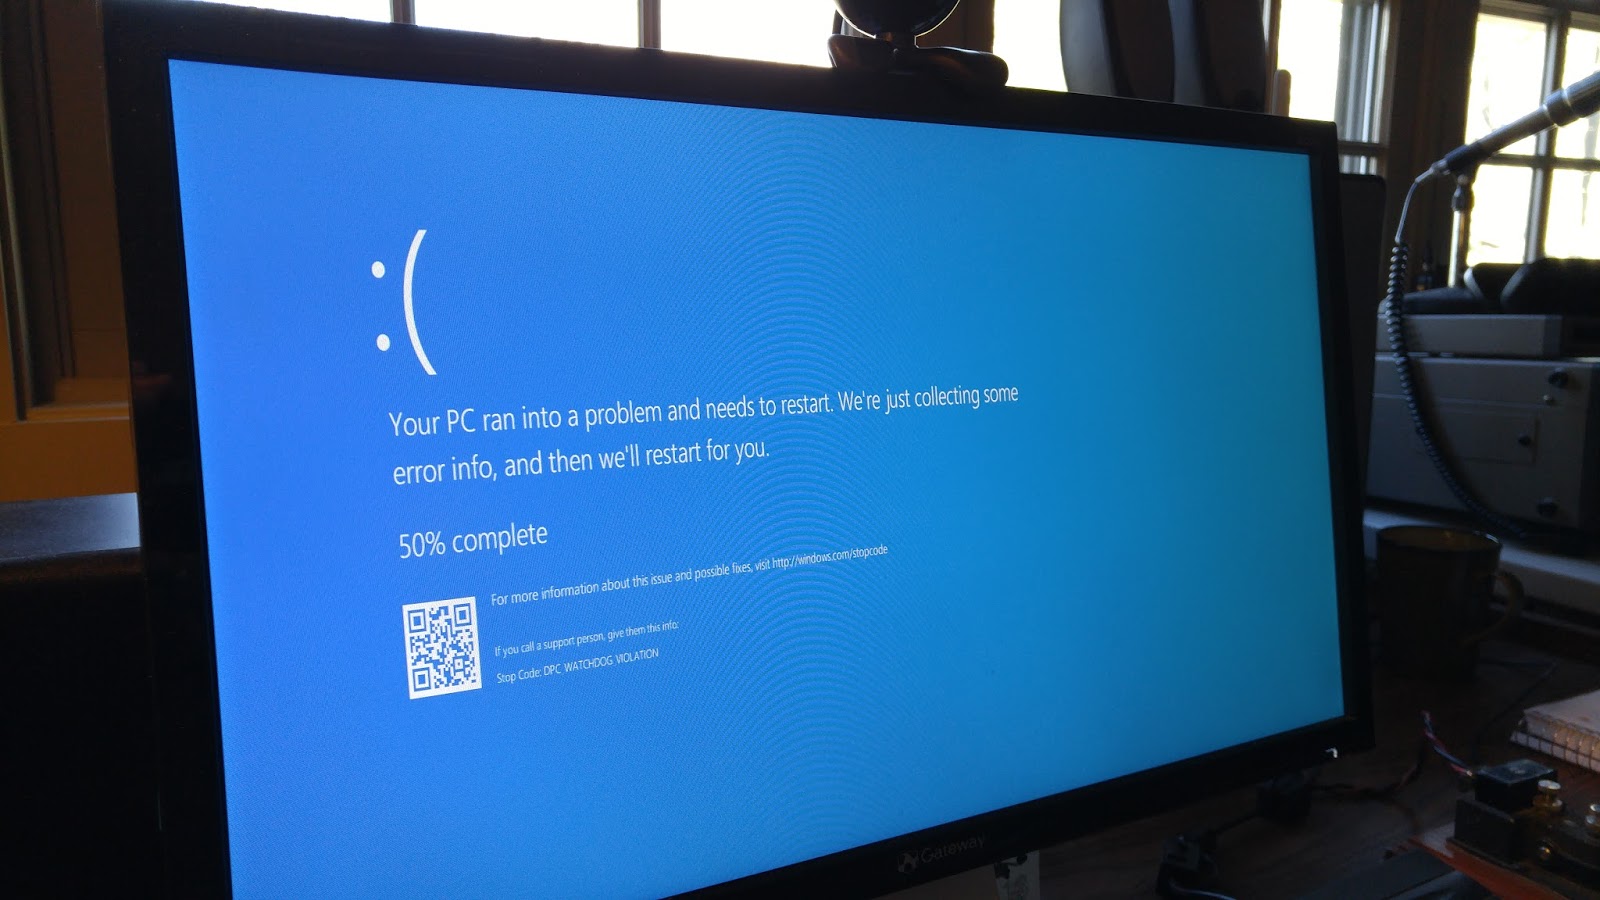 tela azul aparece no meu marido e no meu computador